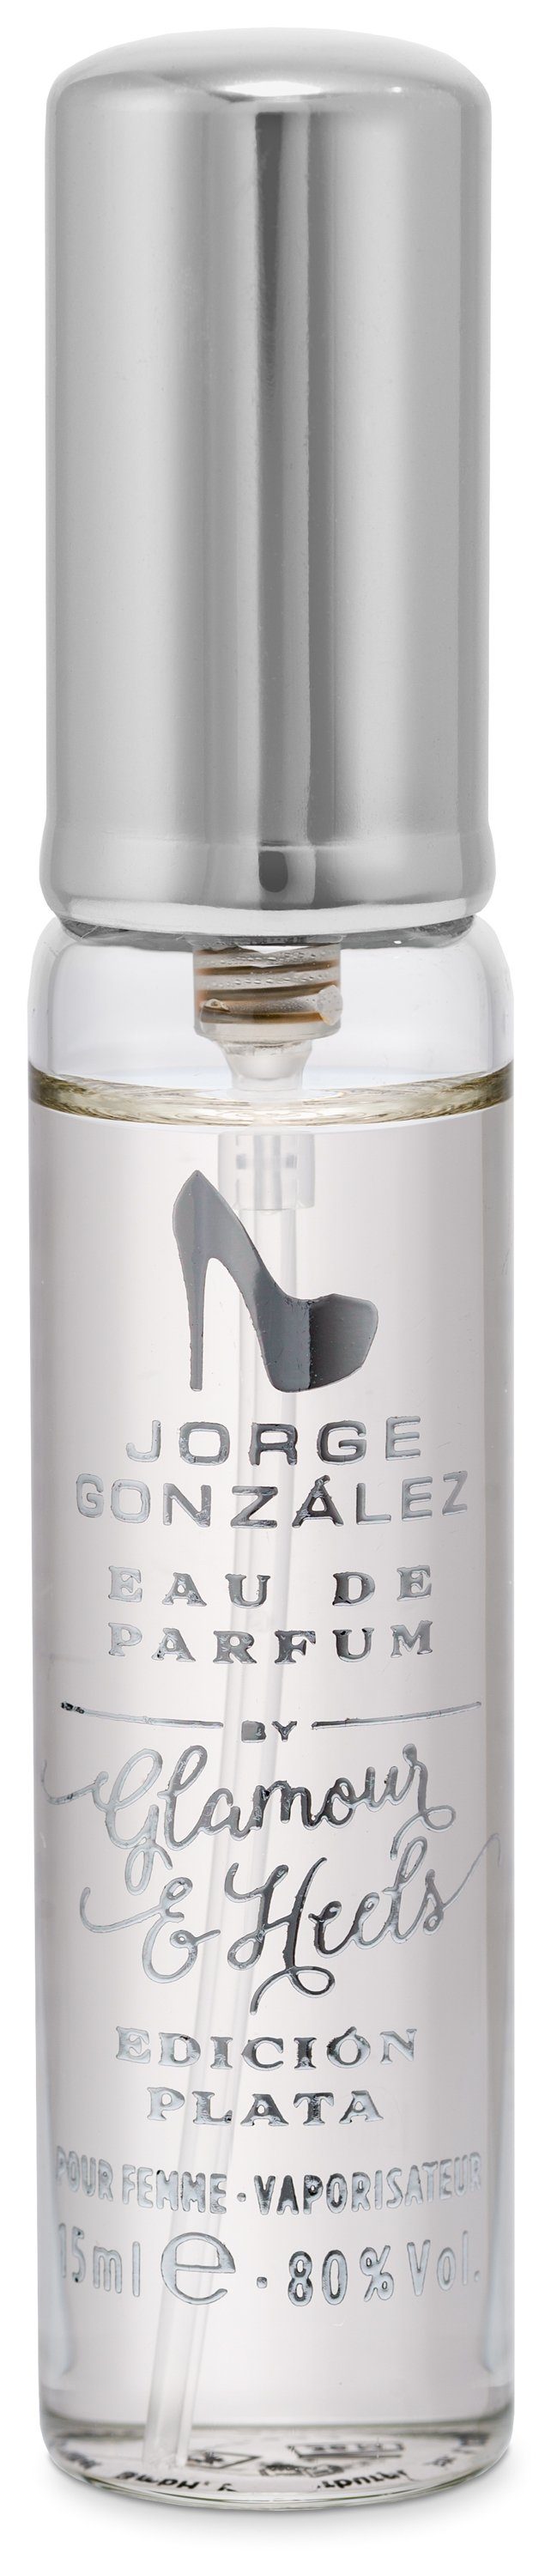 JORGE GONZÁLEZ Eau PLATA Duft Eau Frauen 15ml, Damenduft, EDICIÓN de Parfum, + für de Parfum 100